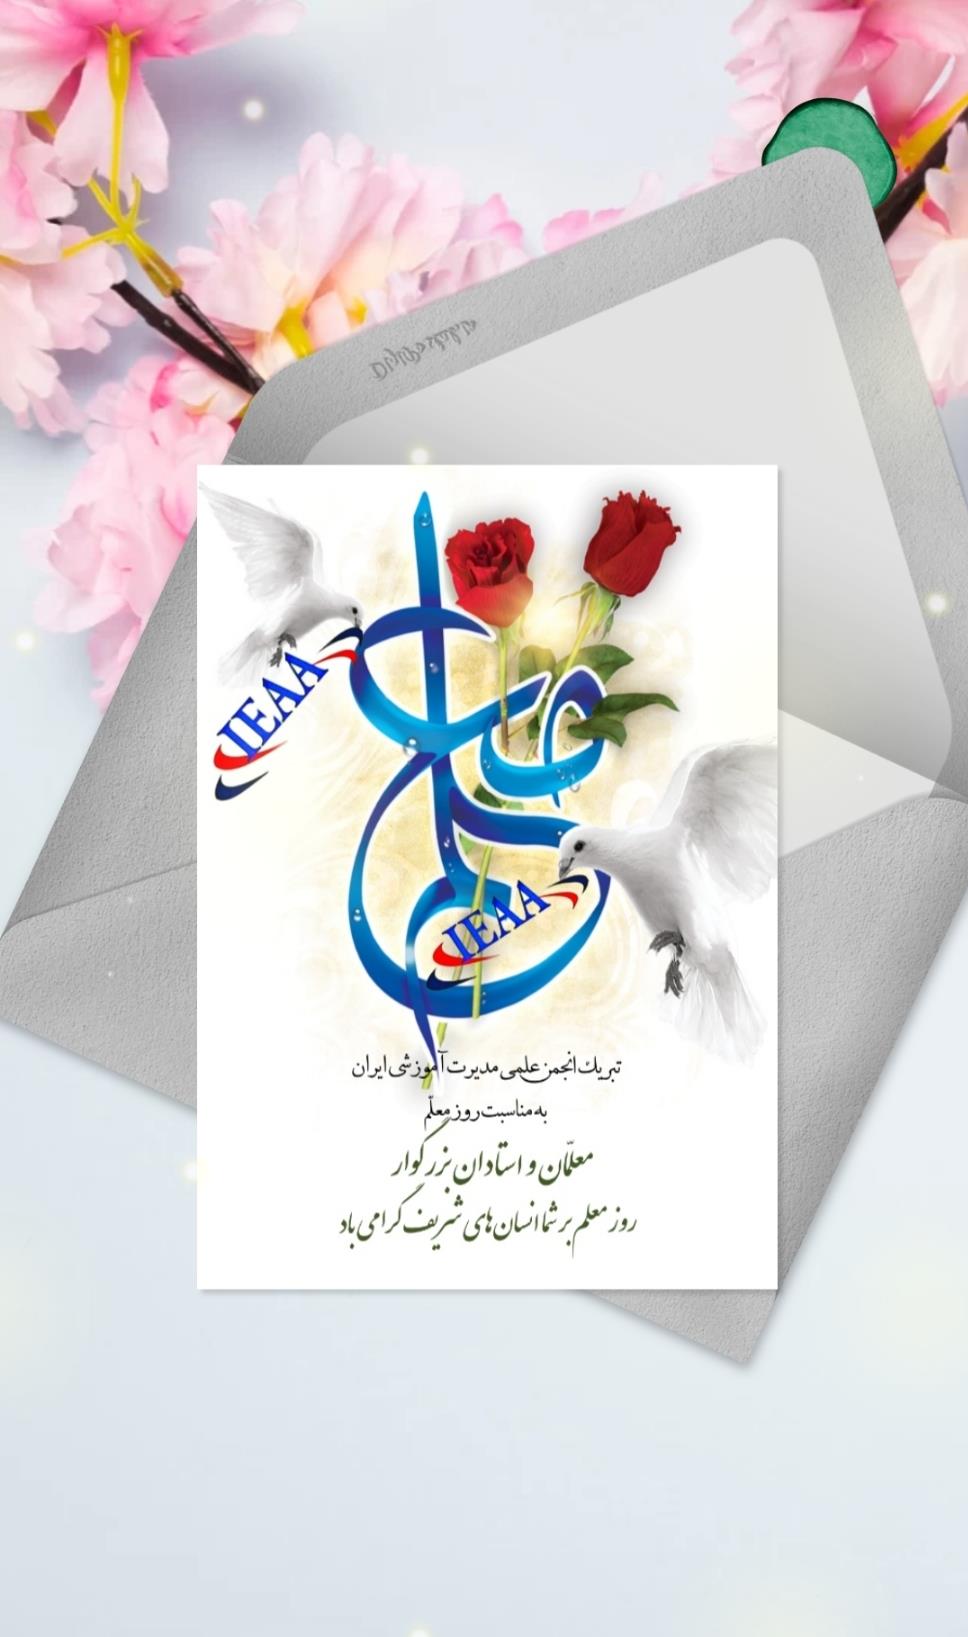 تبریک انجمن علمی مديريت آموزشی ایران به مناسبت فرارسیدن روز معلم